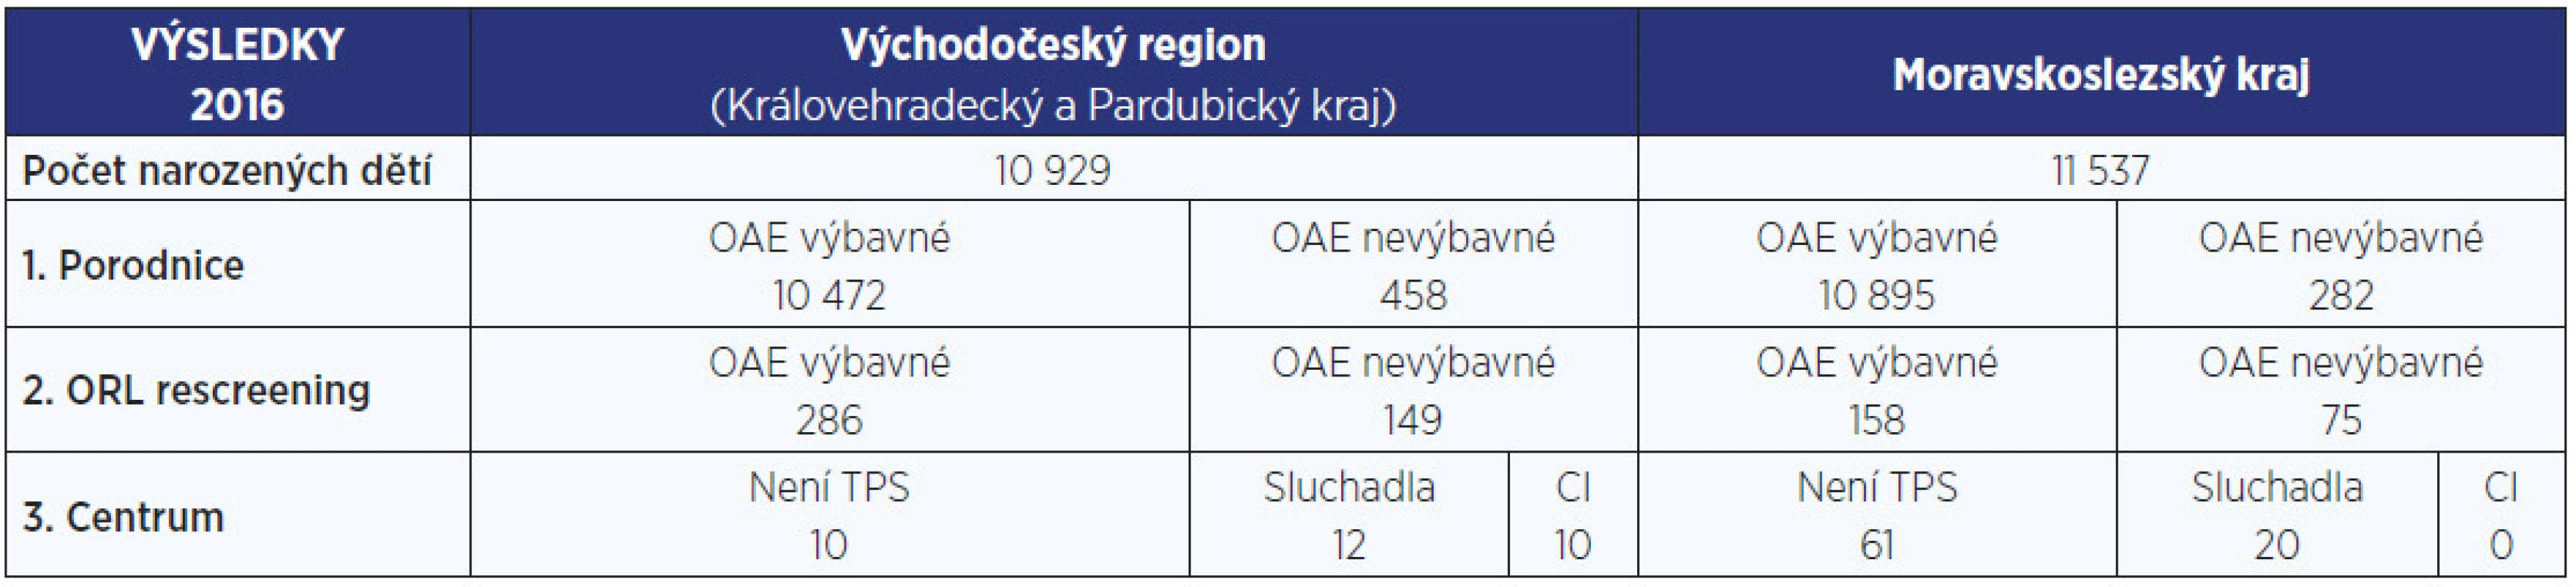 Výsledky screeningu sluchu novorozenců v Moravskoslezském, Královehradeckém a Pardubickém kraji v roce 2016